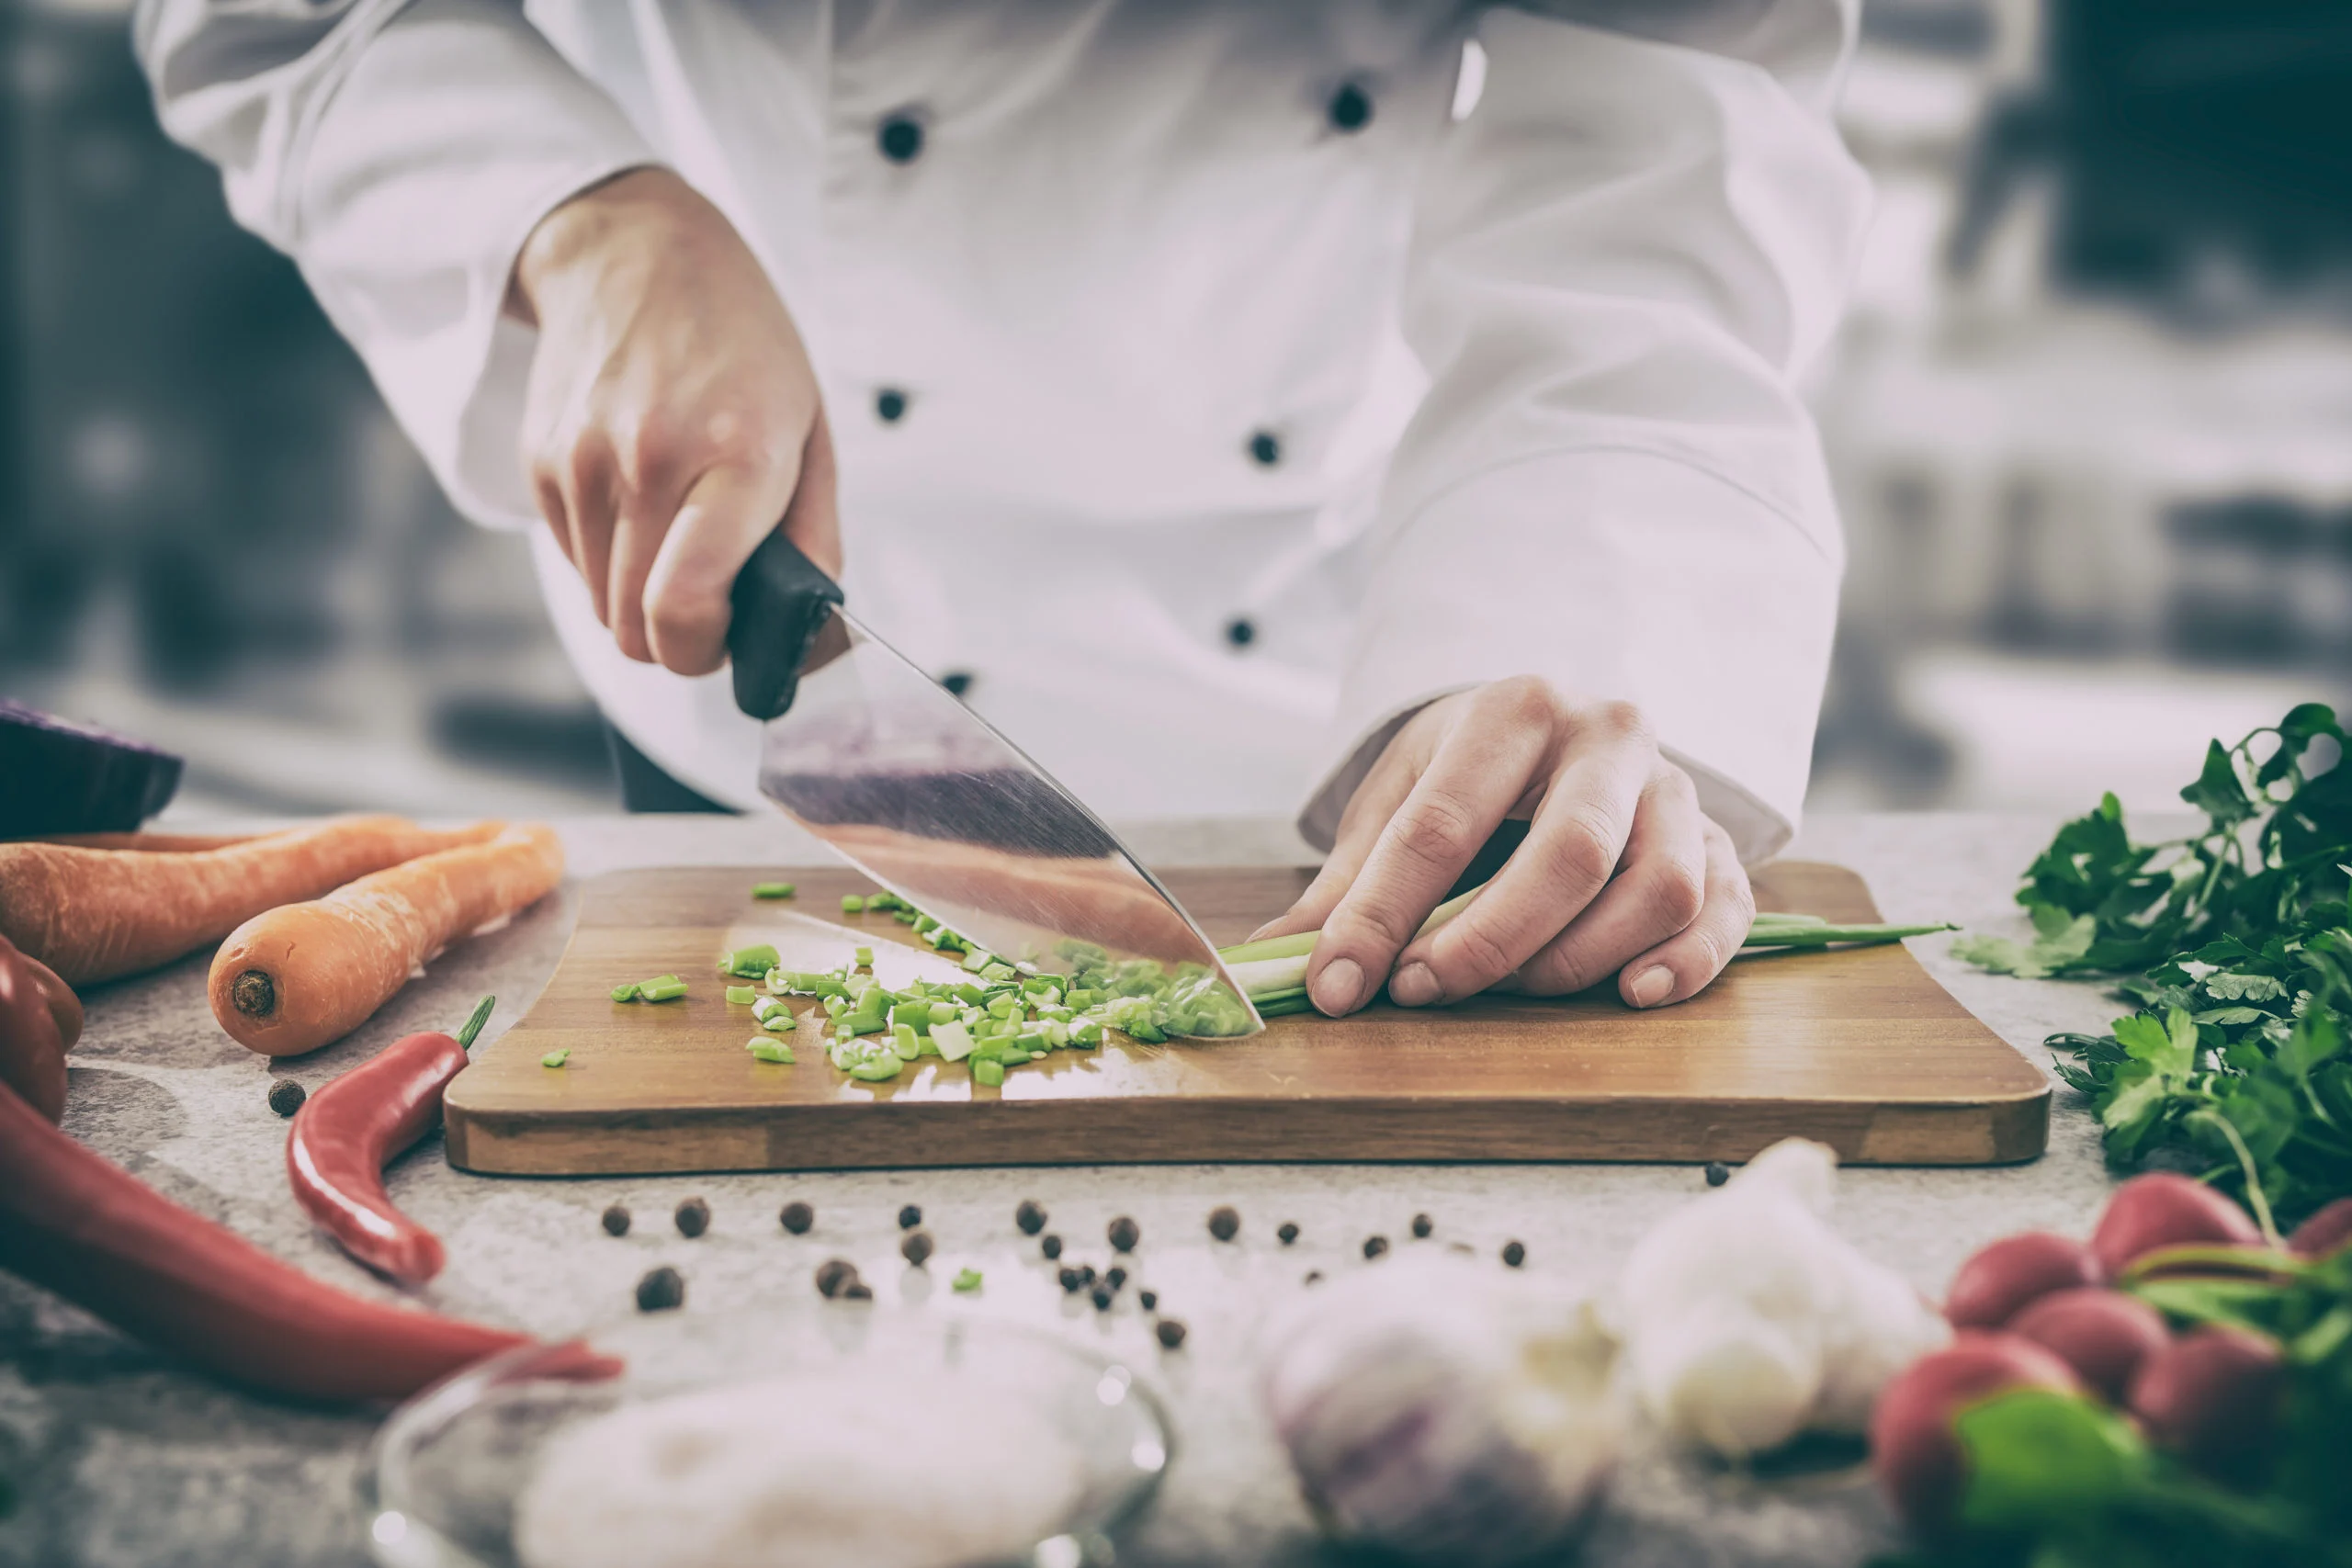 مربی آشپزی، یک ایده تجاری خلاقانه و پردرآمد